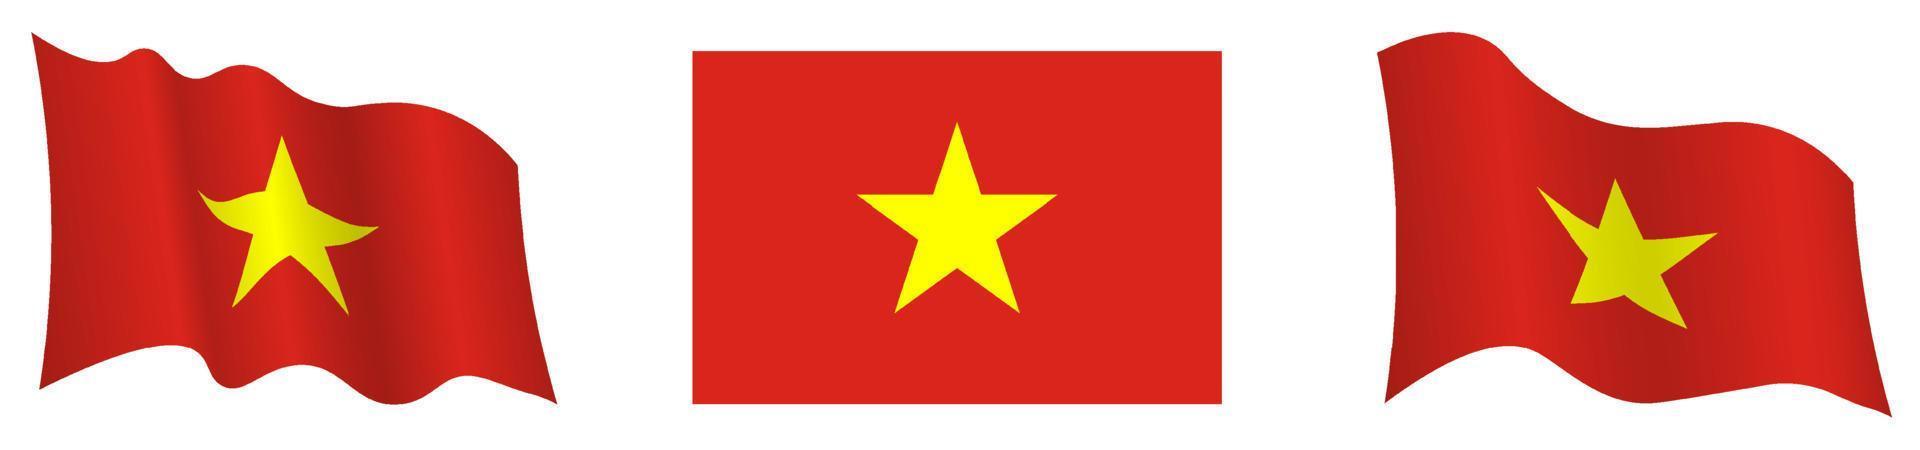 drapeau de la république du vietnam en position statique et en mouvement, se développant au vent dans des couleurs et des tailles exactes, sur fond blanc vecteur